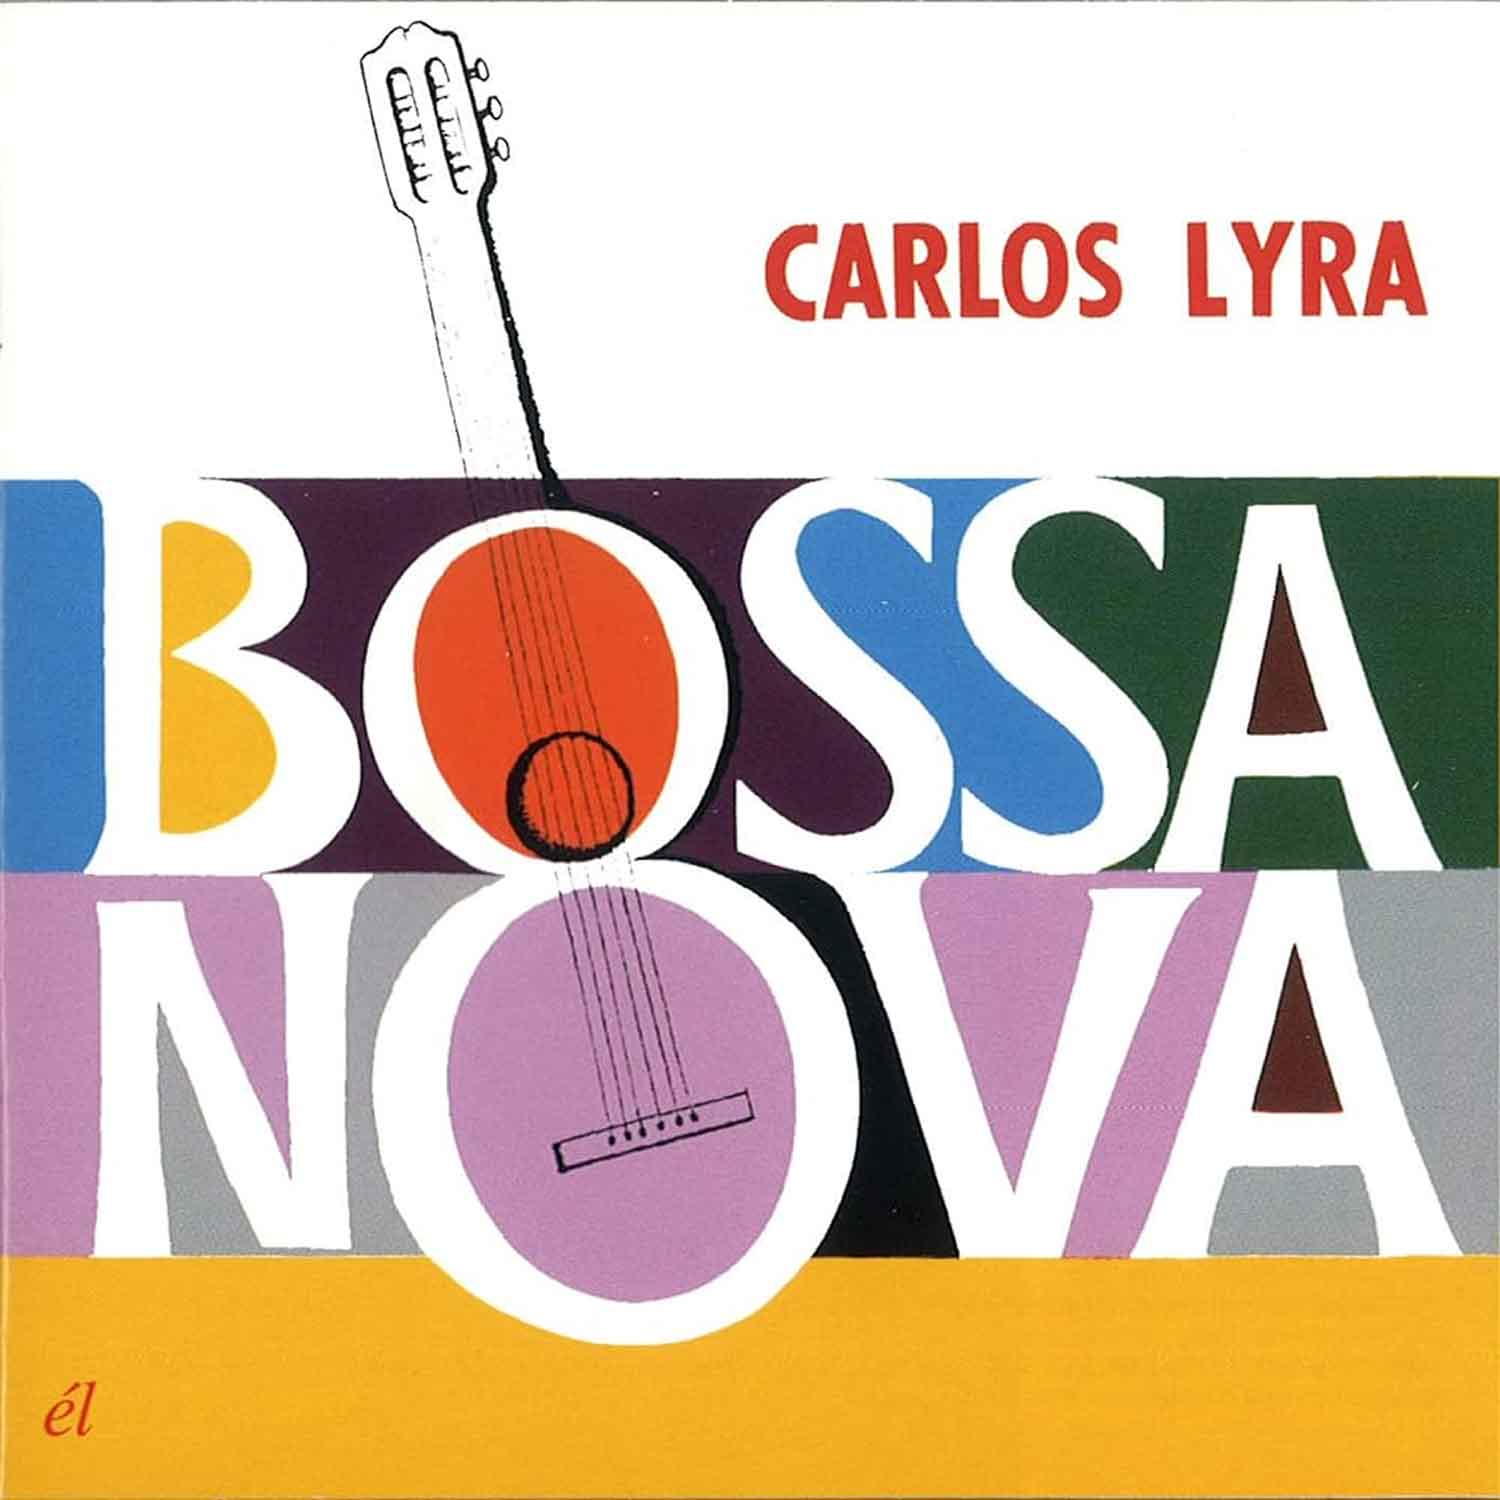 Ep157- Carlos Lyra: Uma biografia musical